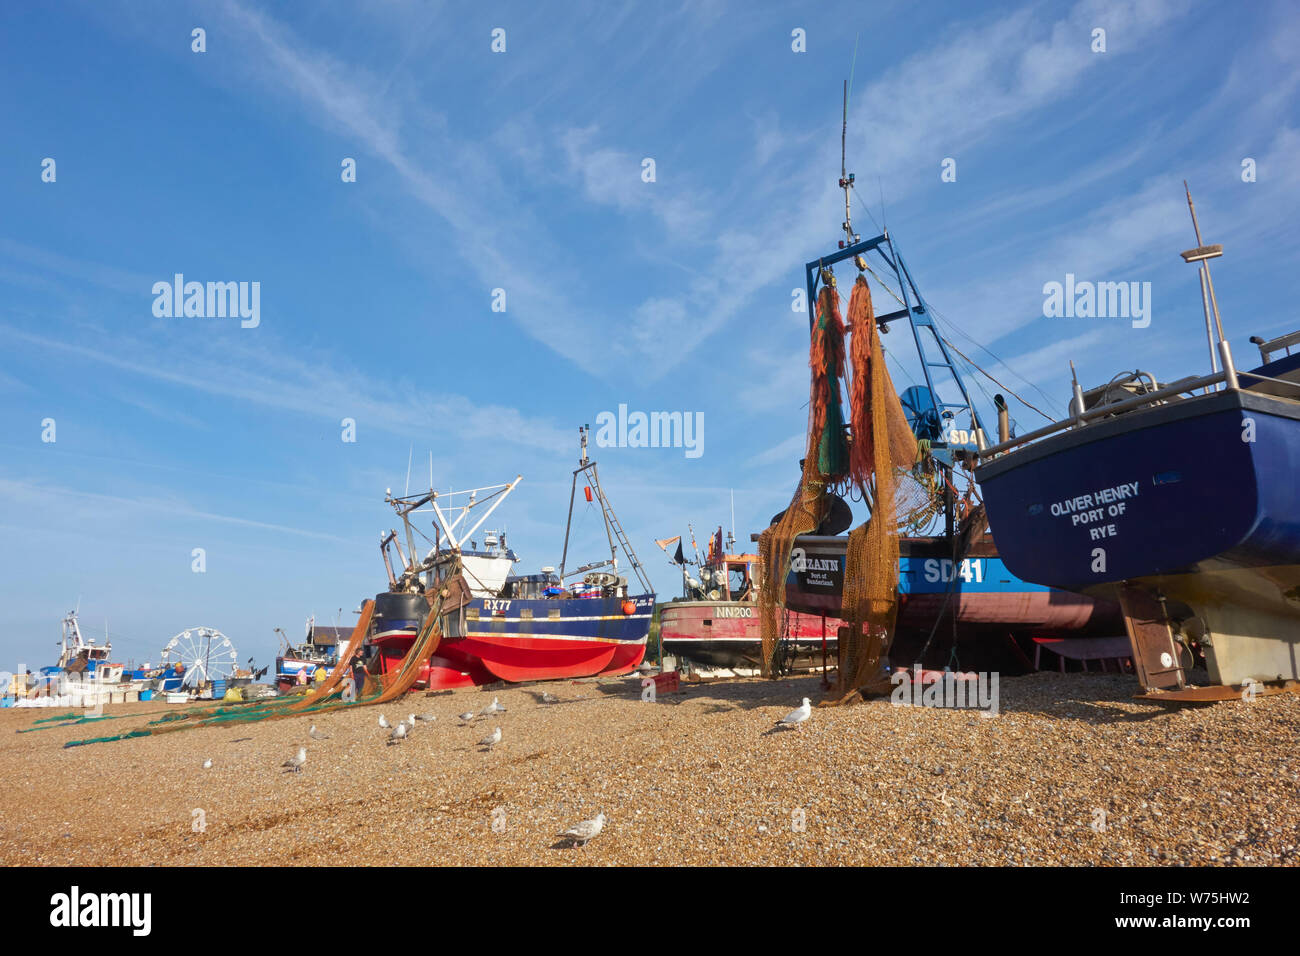 Bateaux de pêche colorés sur la vieille ville de Hastings Stade Fishermens beach, Rock-a-Nore, East Sussex, UK Banque D'Images